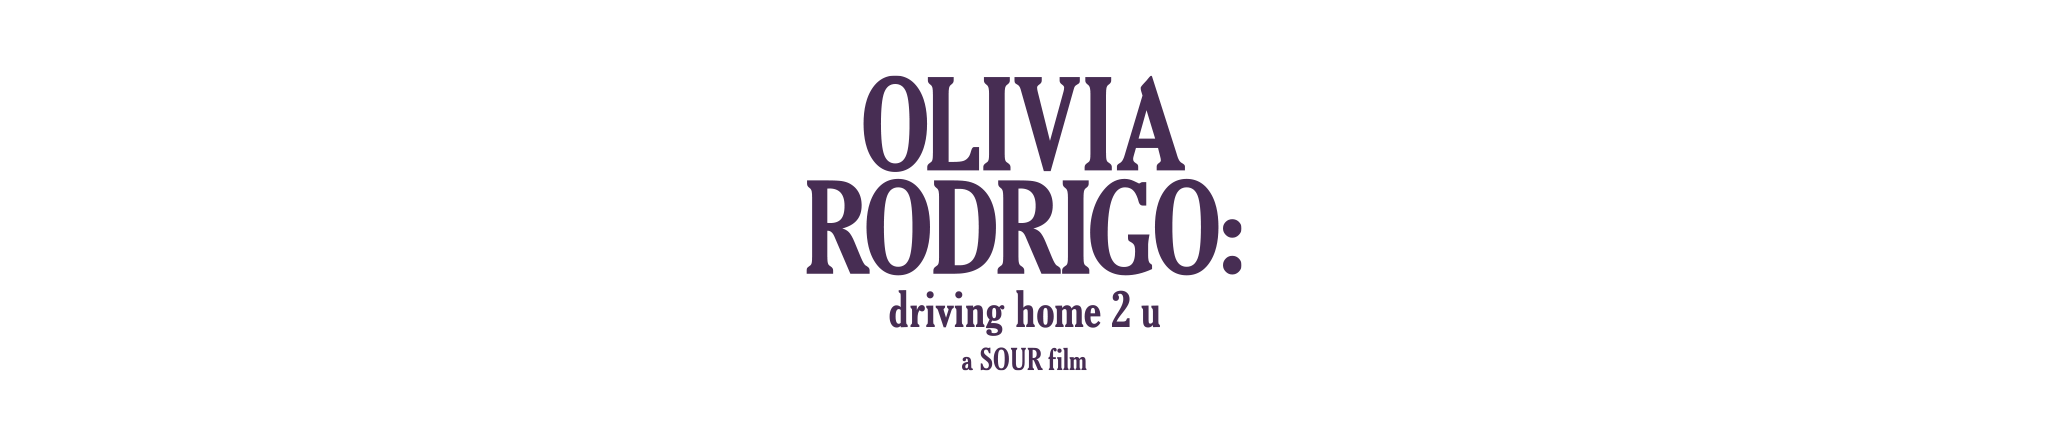 OLIVIA RODRIGO: driving home 2 u | a SOUR film